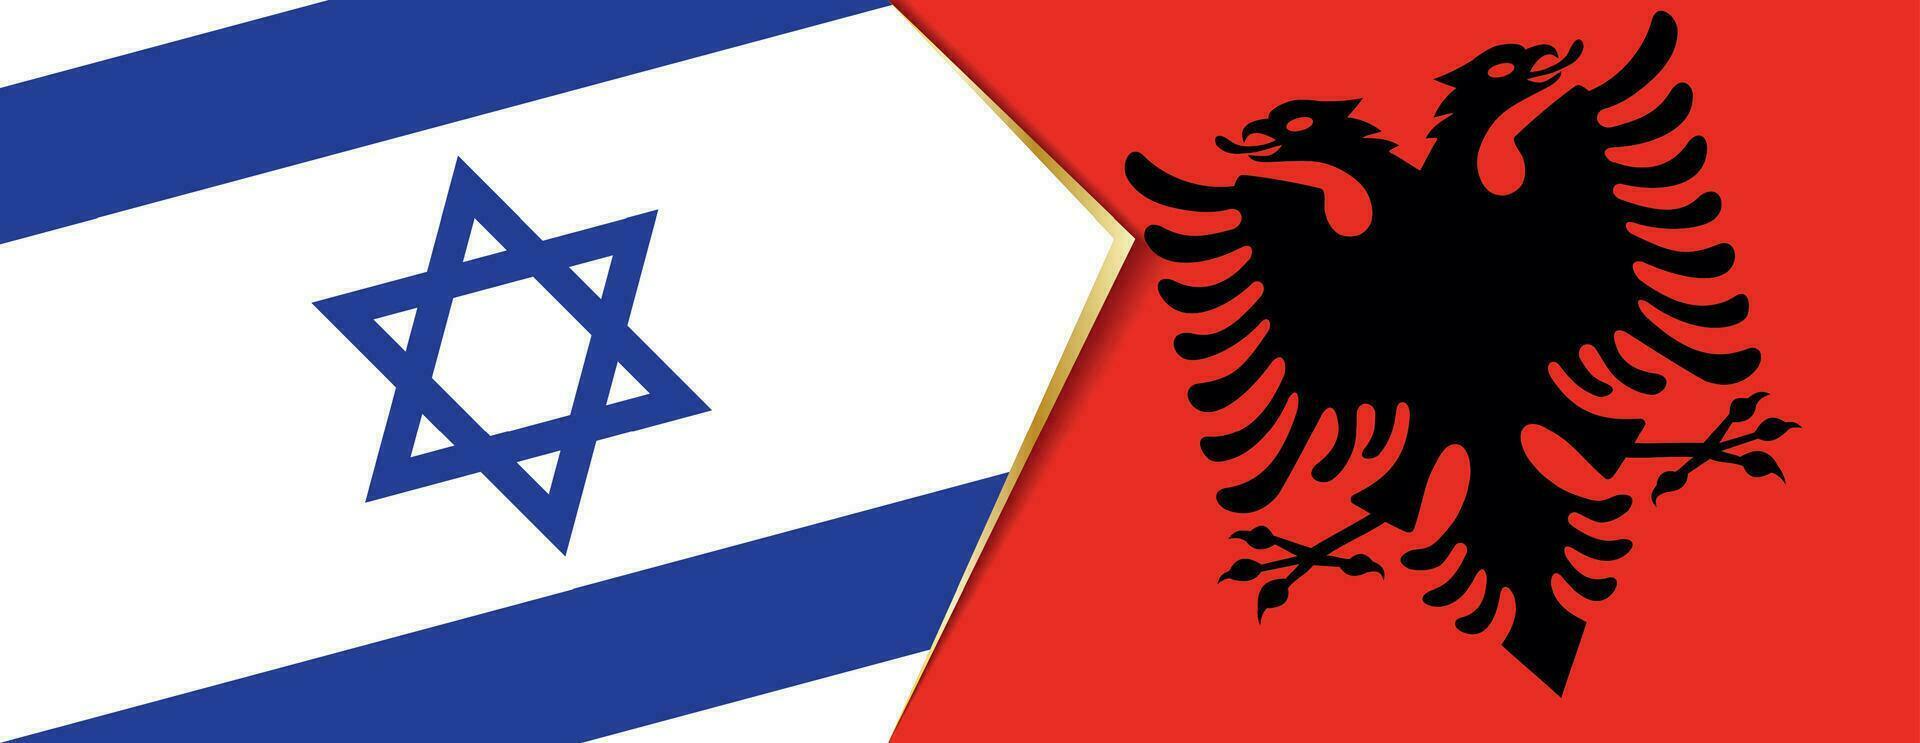 Israel y Albania banderas, dos vector banderas